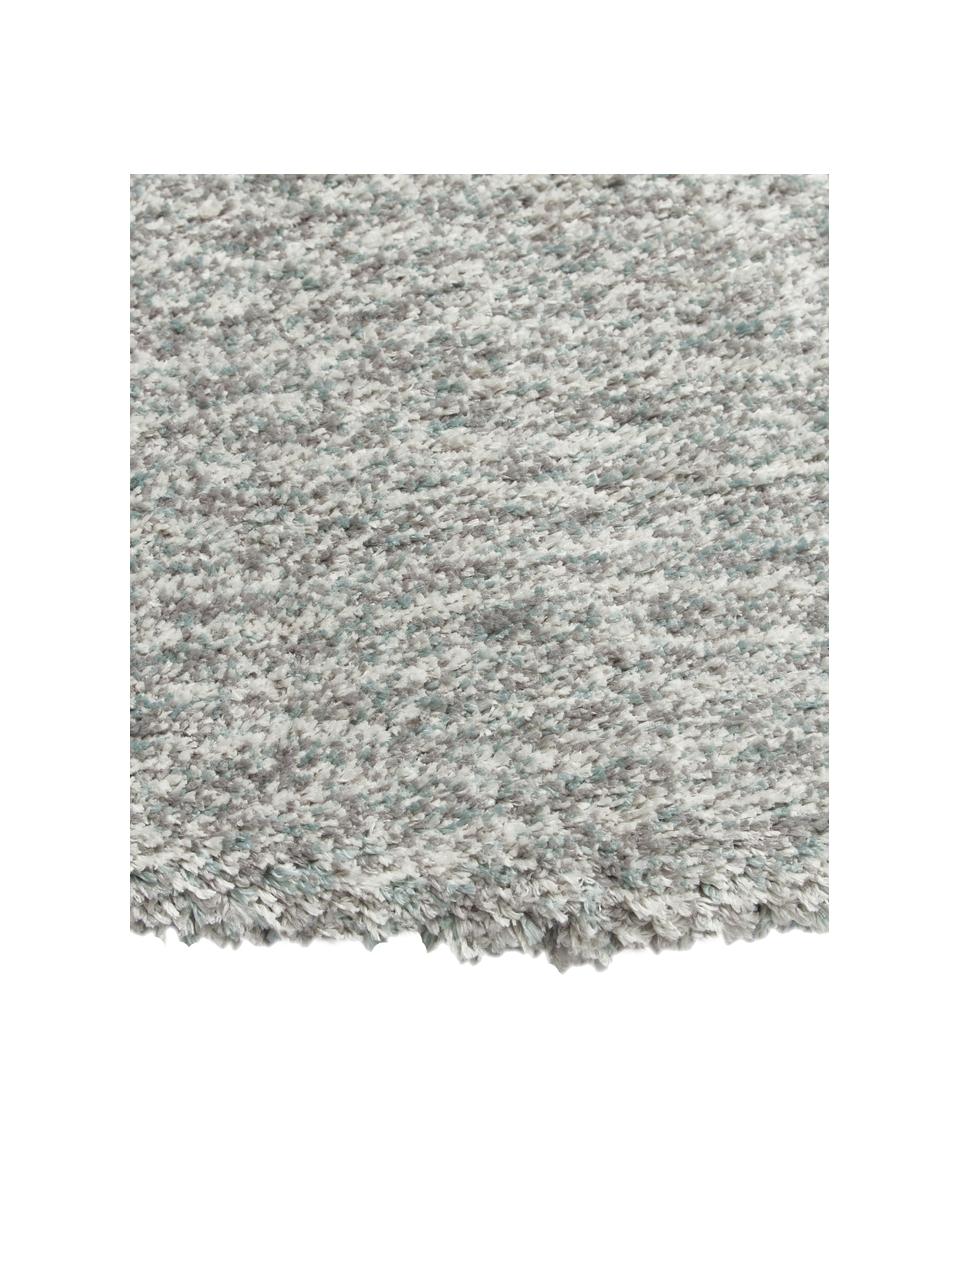 Flauschiger runder Hochflor-Teppich Marsha in Grau/Mintgrün, Rückseite: 55 % Polyester, 45 % Baum, Grautöne, Ø 150 cm (Grösse M)